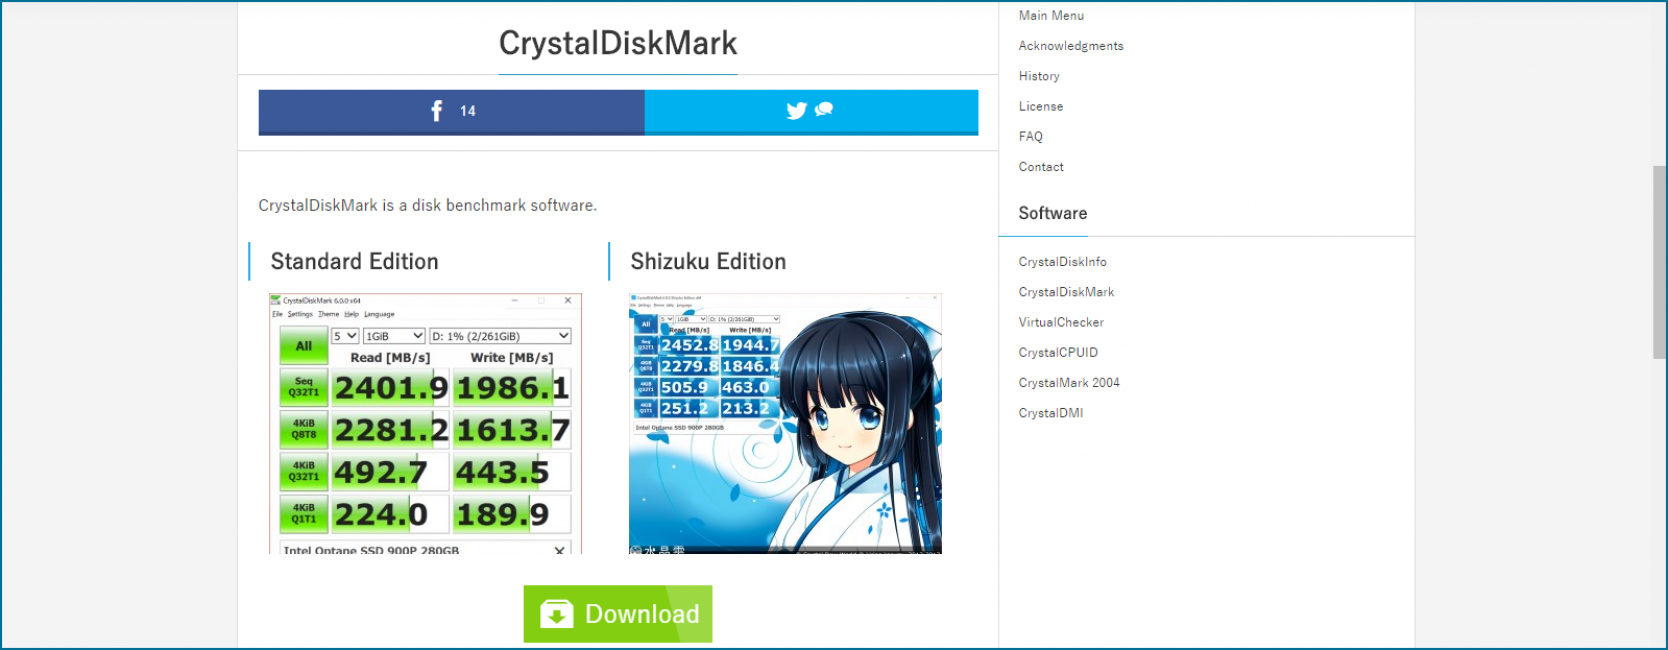 тест производительности компьютера CrystalDiskMark